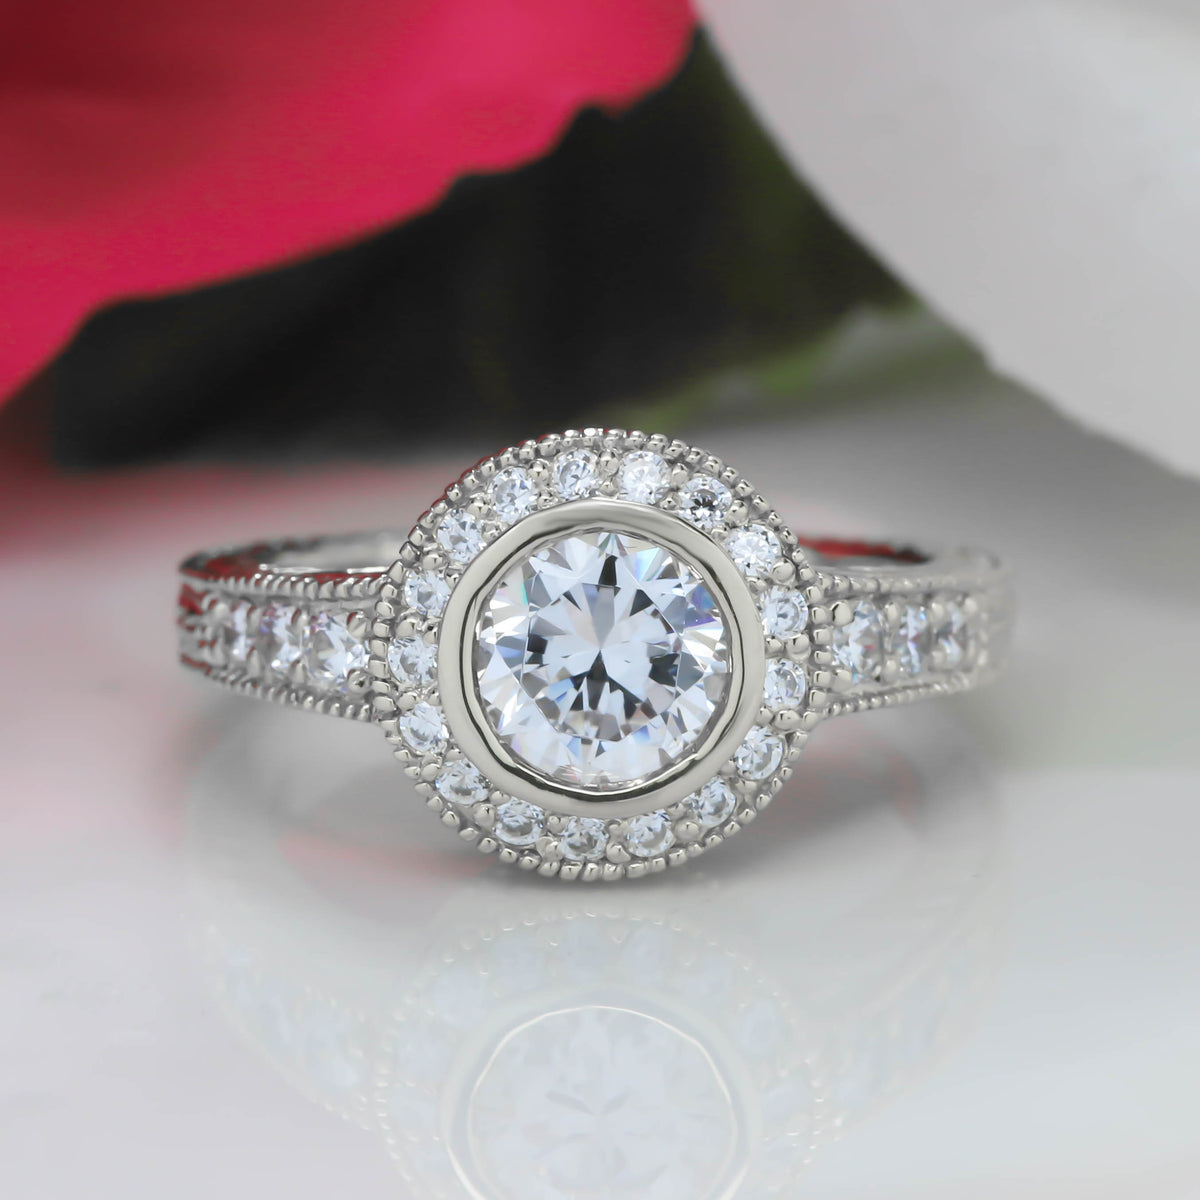 Bezel Set Diamond Engagement Ring Forever One Moissanite Center - Callie - Moissanite Rings